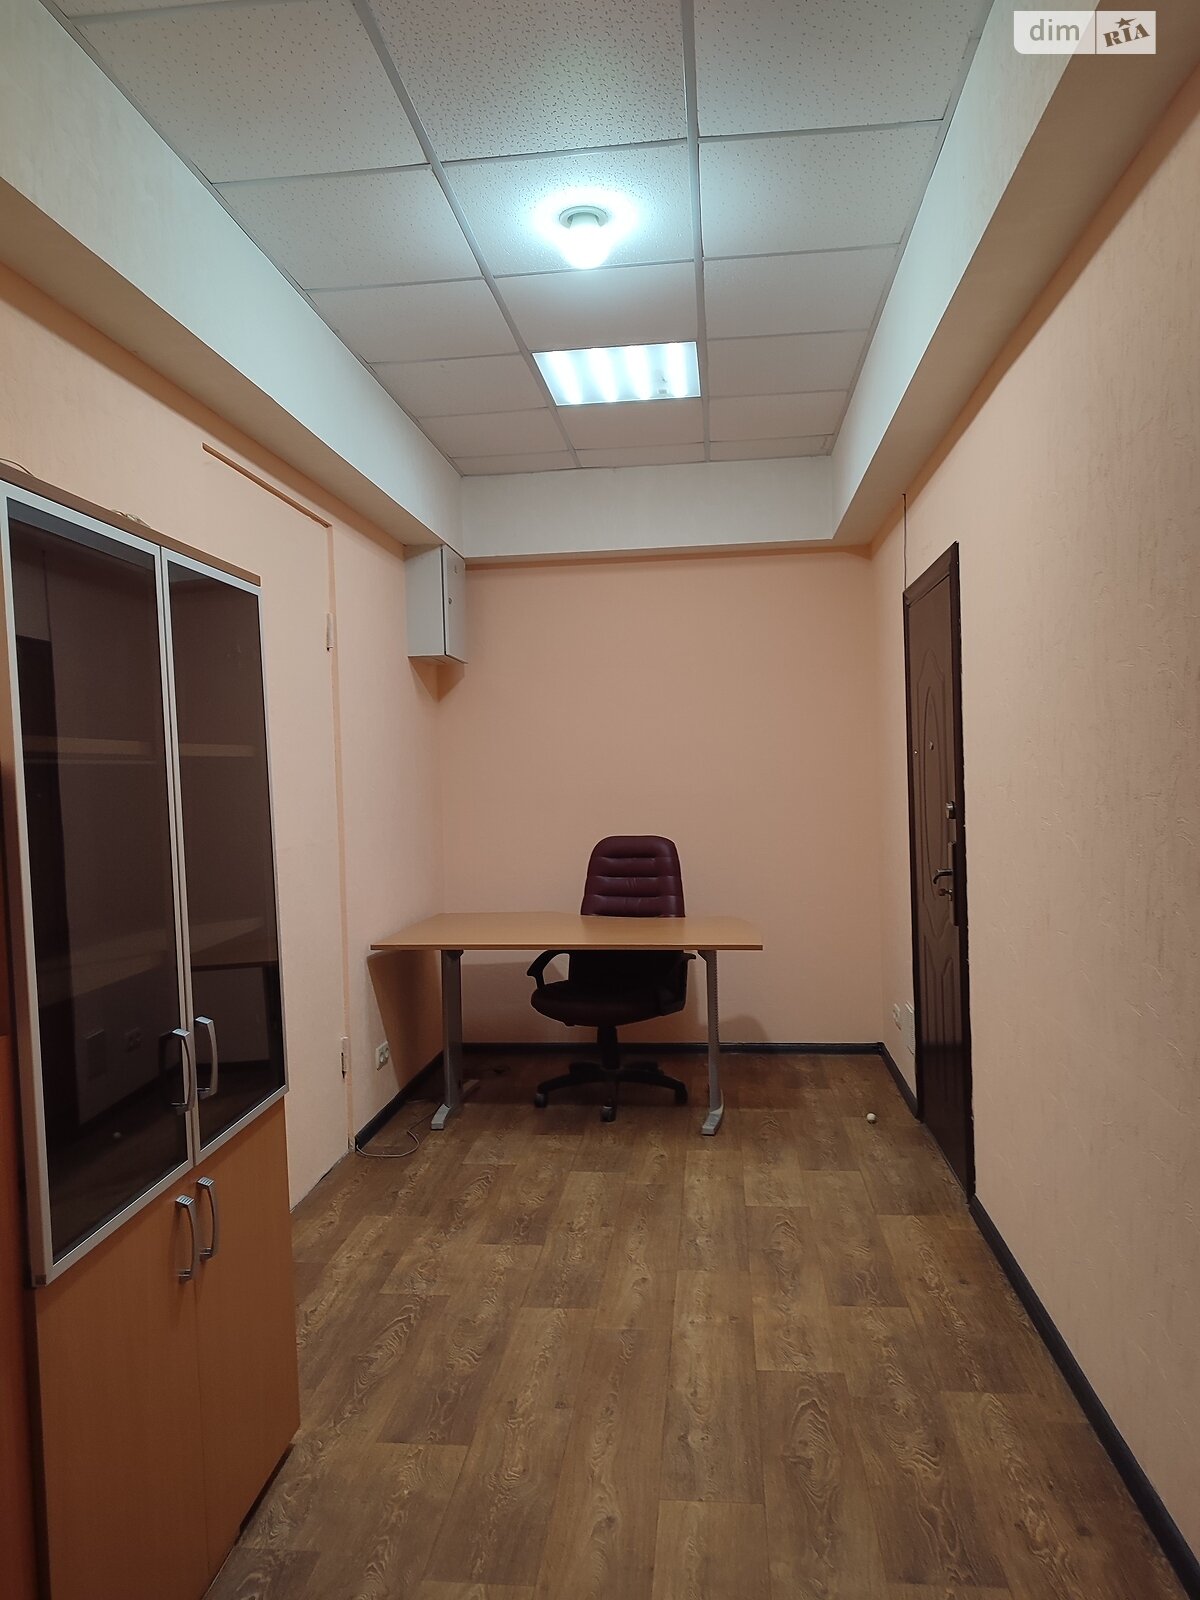 Аренда офисного помещения в Харькове, Полтавский Шлях улица 123, помещений - 2, этаж - 1 фото 1